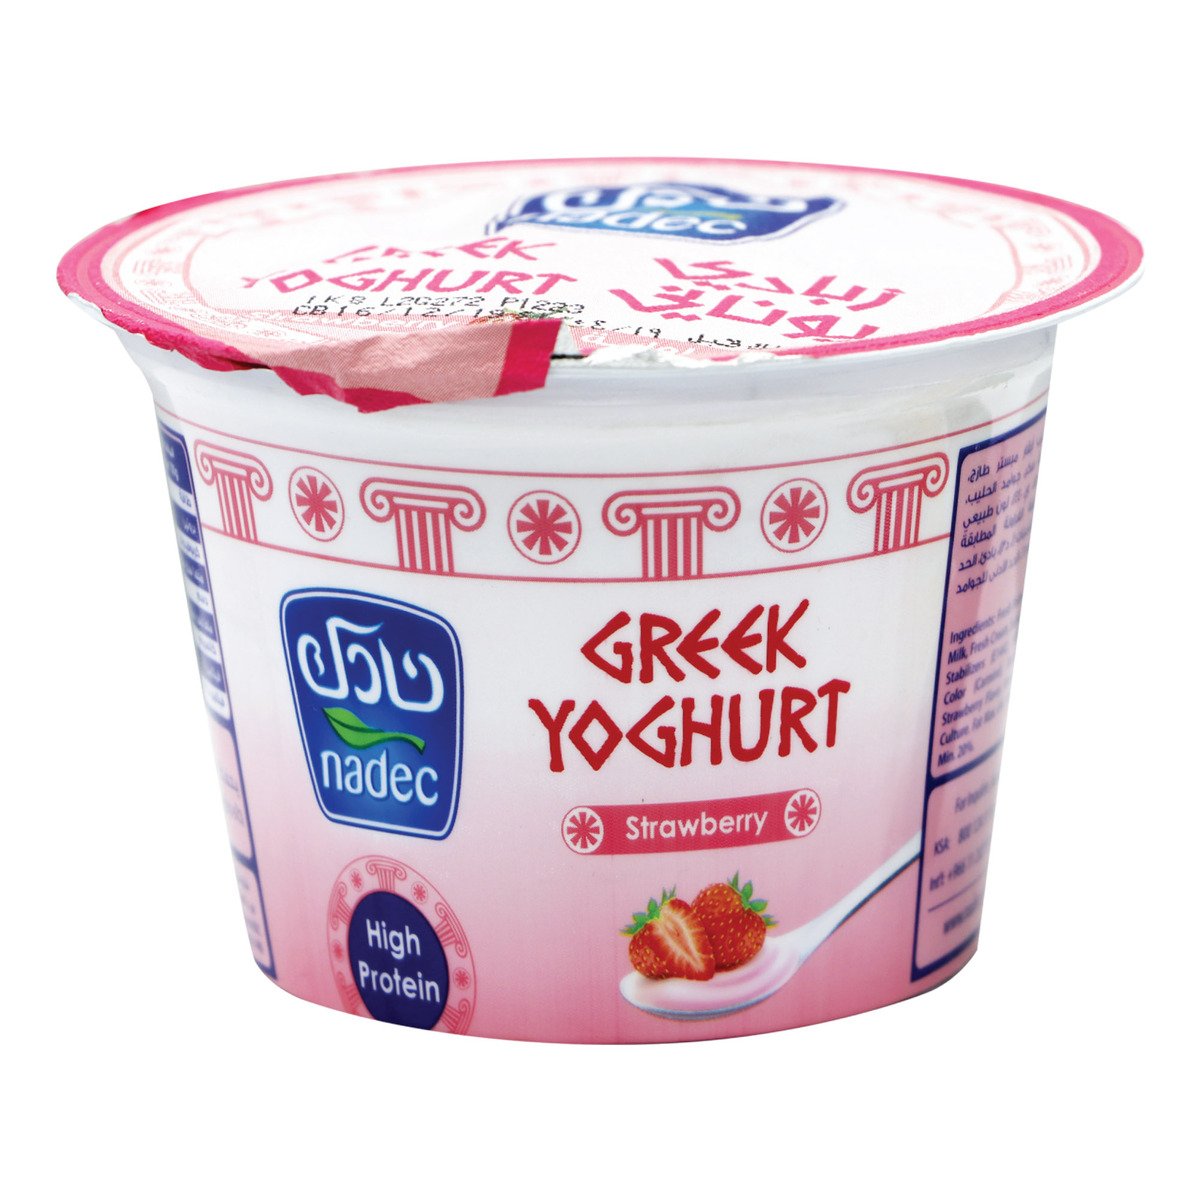 Nadec Greek Yoghurt Strawberry 160g